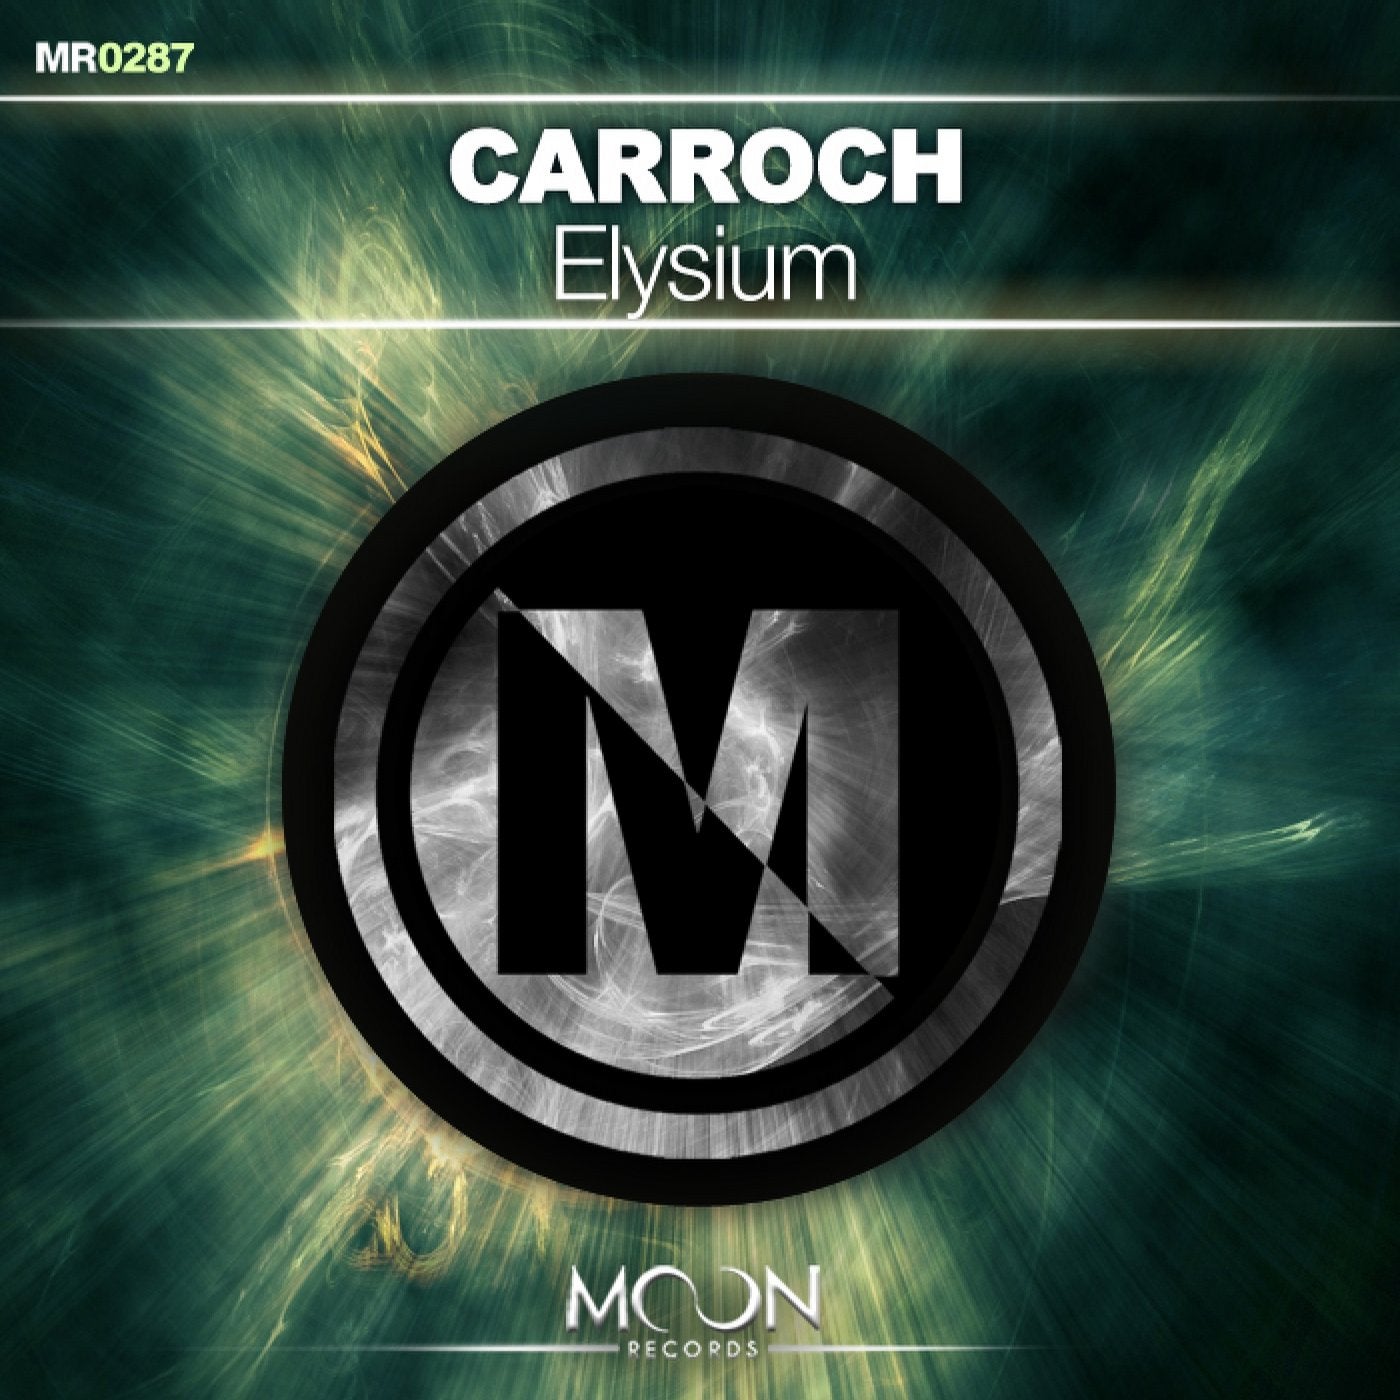 Carroch music download - Beatport